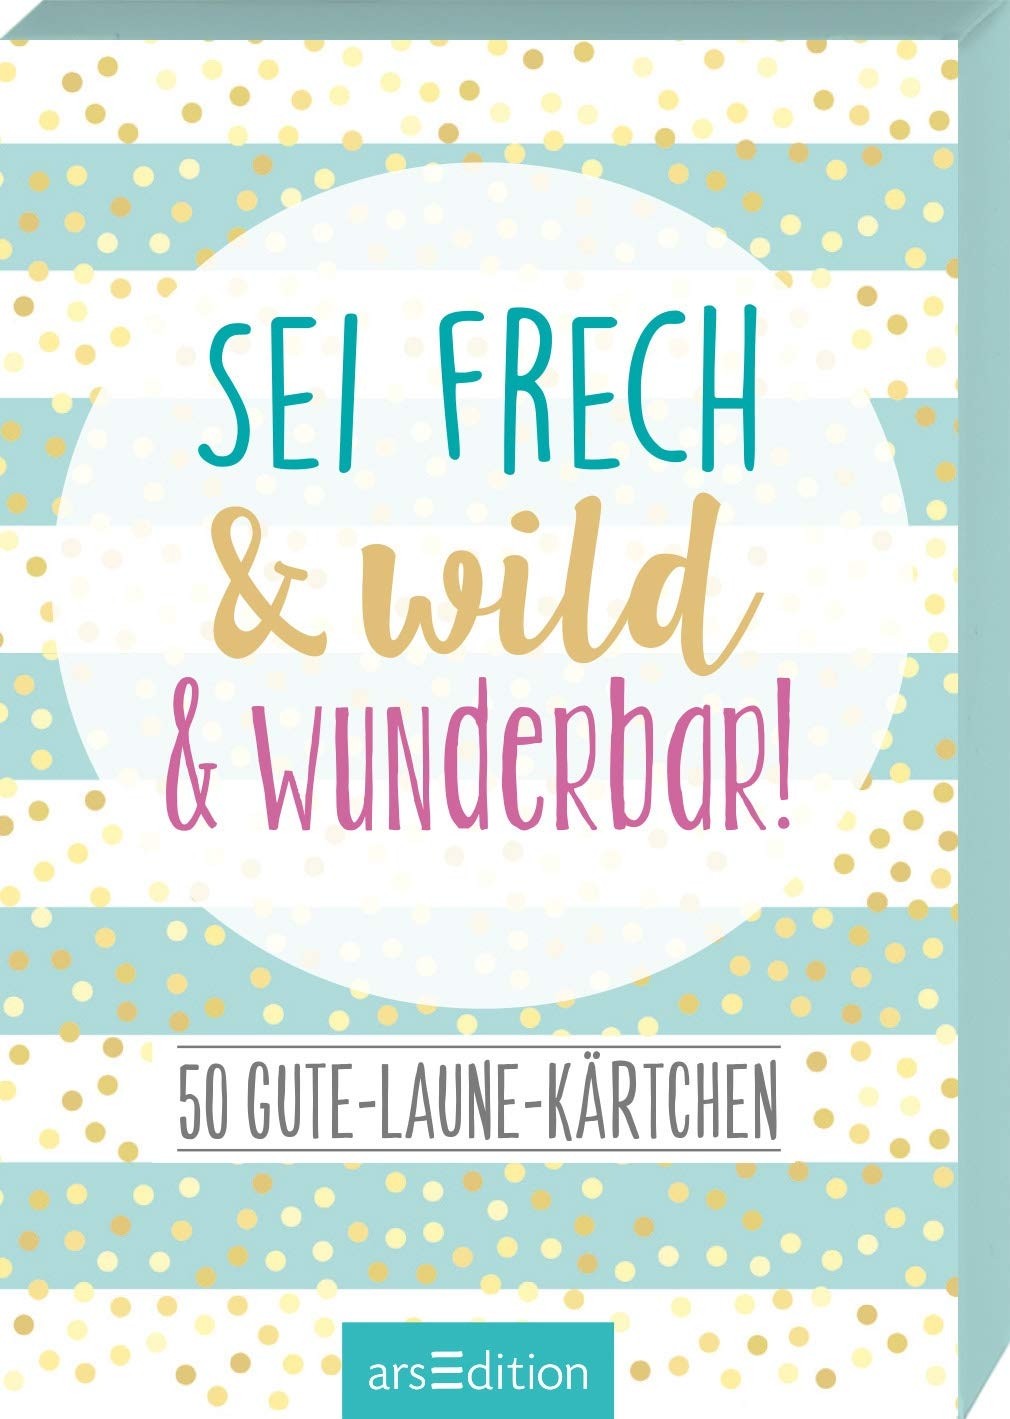 50 Gute-Laun-Kärtchen Sei frech & wild & wunderbar!